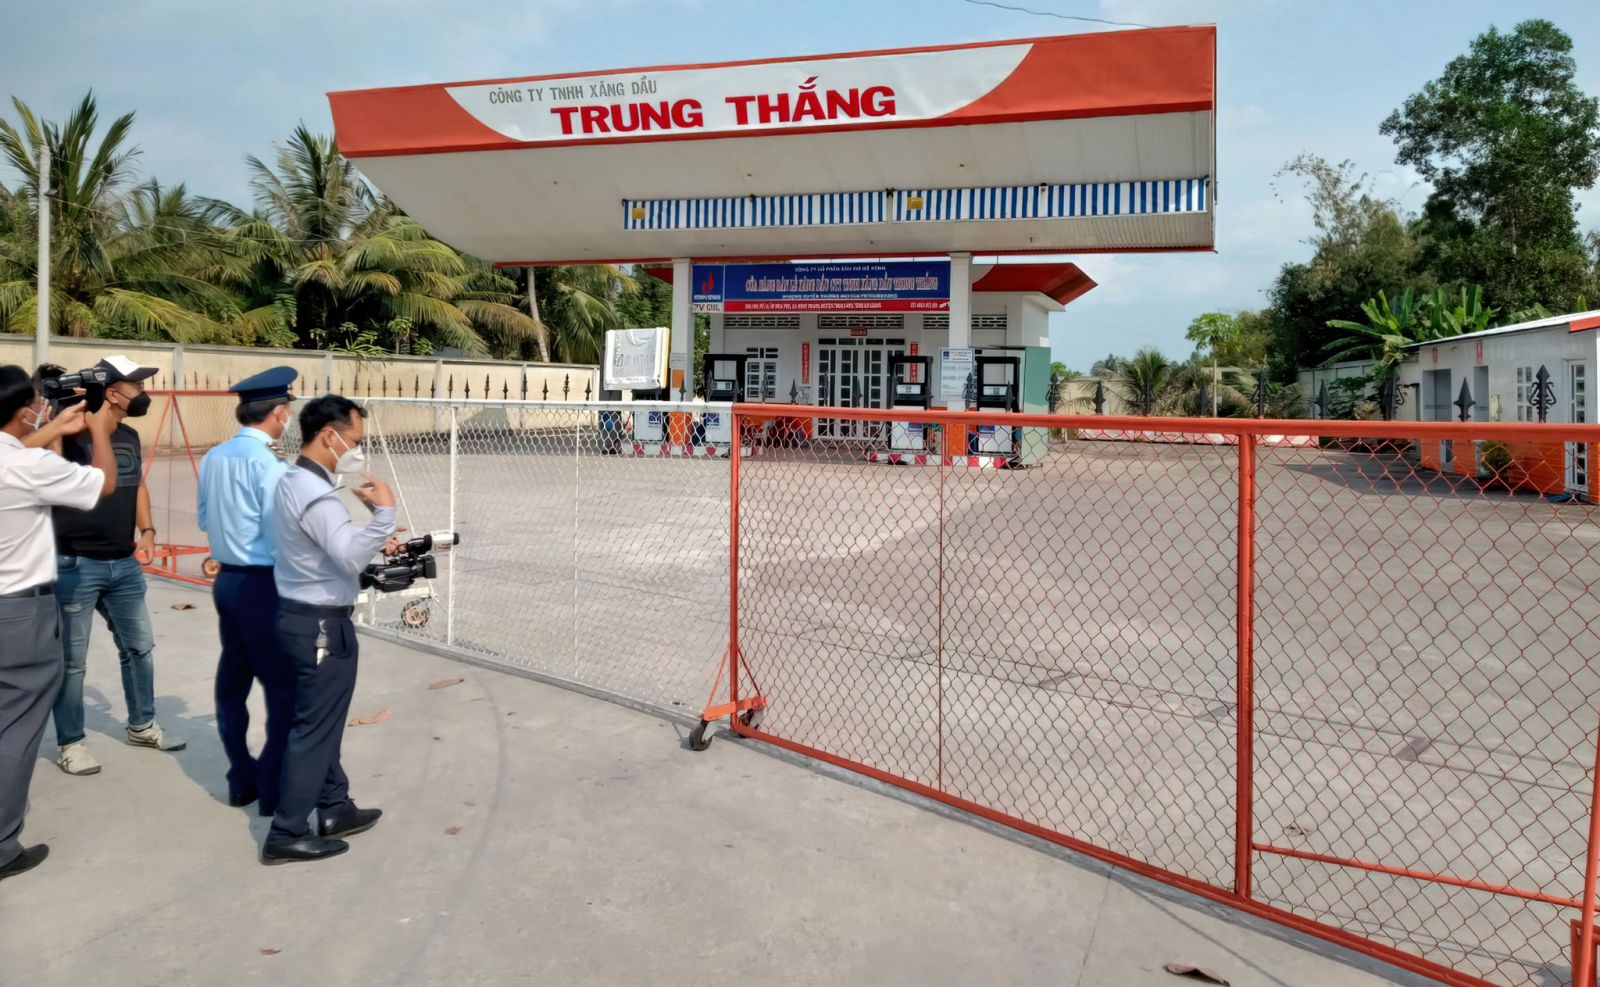 Lực lượng QLTT tỉnh An Giang kiểm tra một cây xăng trên địa bàn xã Định Thành, H.Thoại Sơn vào sáng 8.2/ Nguồn ảnh CỤC QLTT AN GIANG